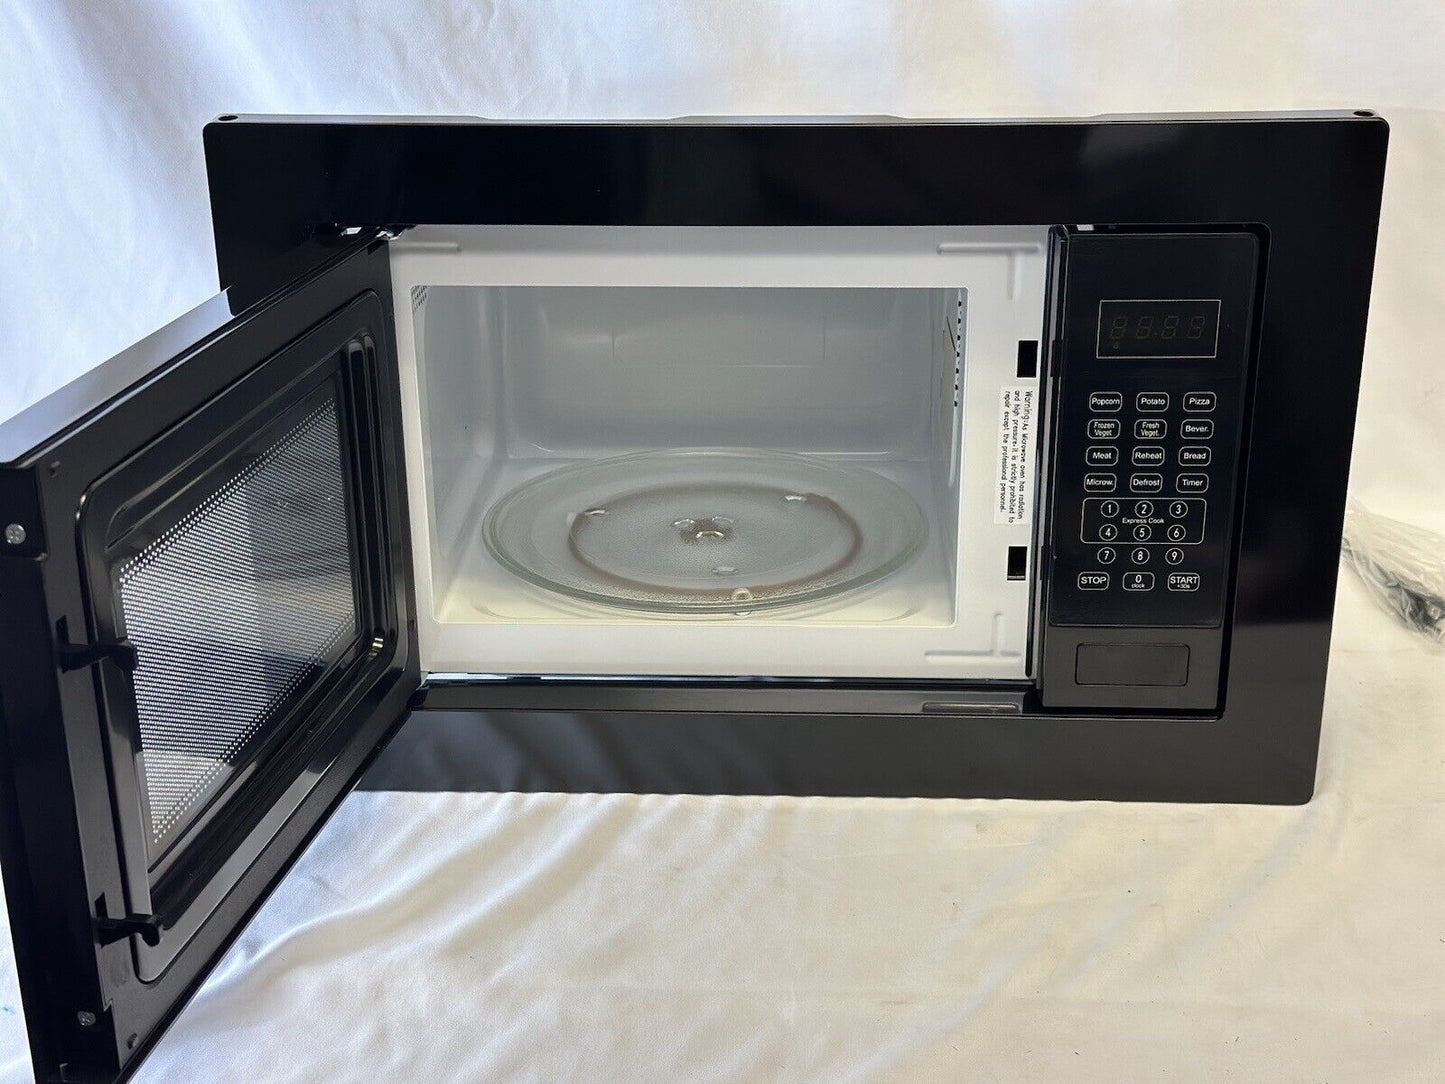 Greystone RV Camper Microwave 0.9 Cu Ft With Trim Ring BLACK Model #GSMW09B